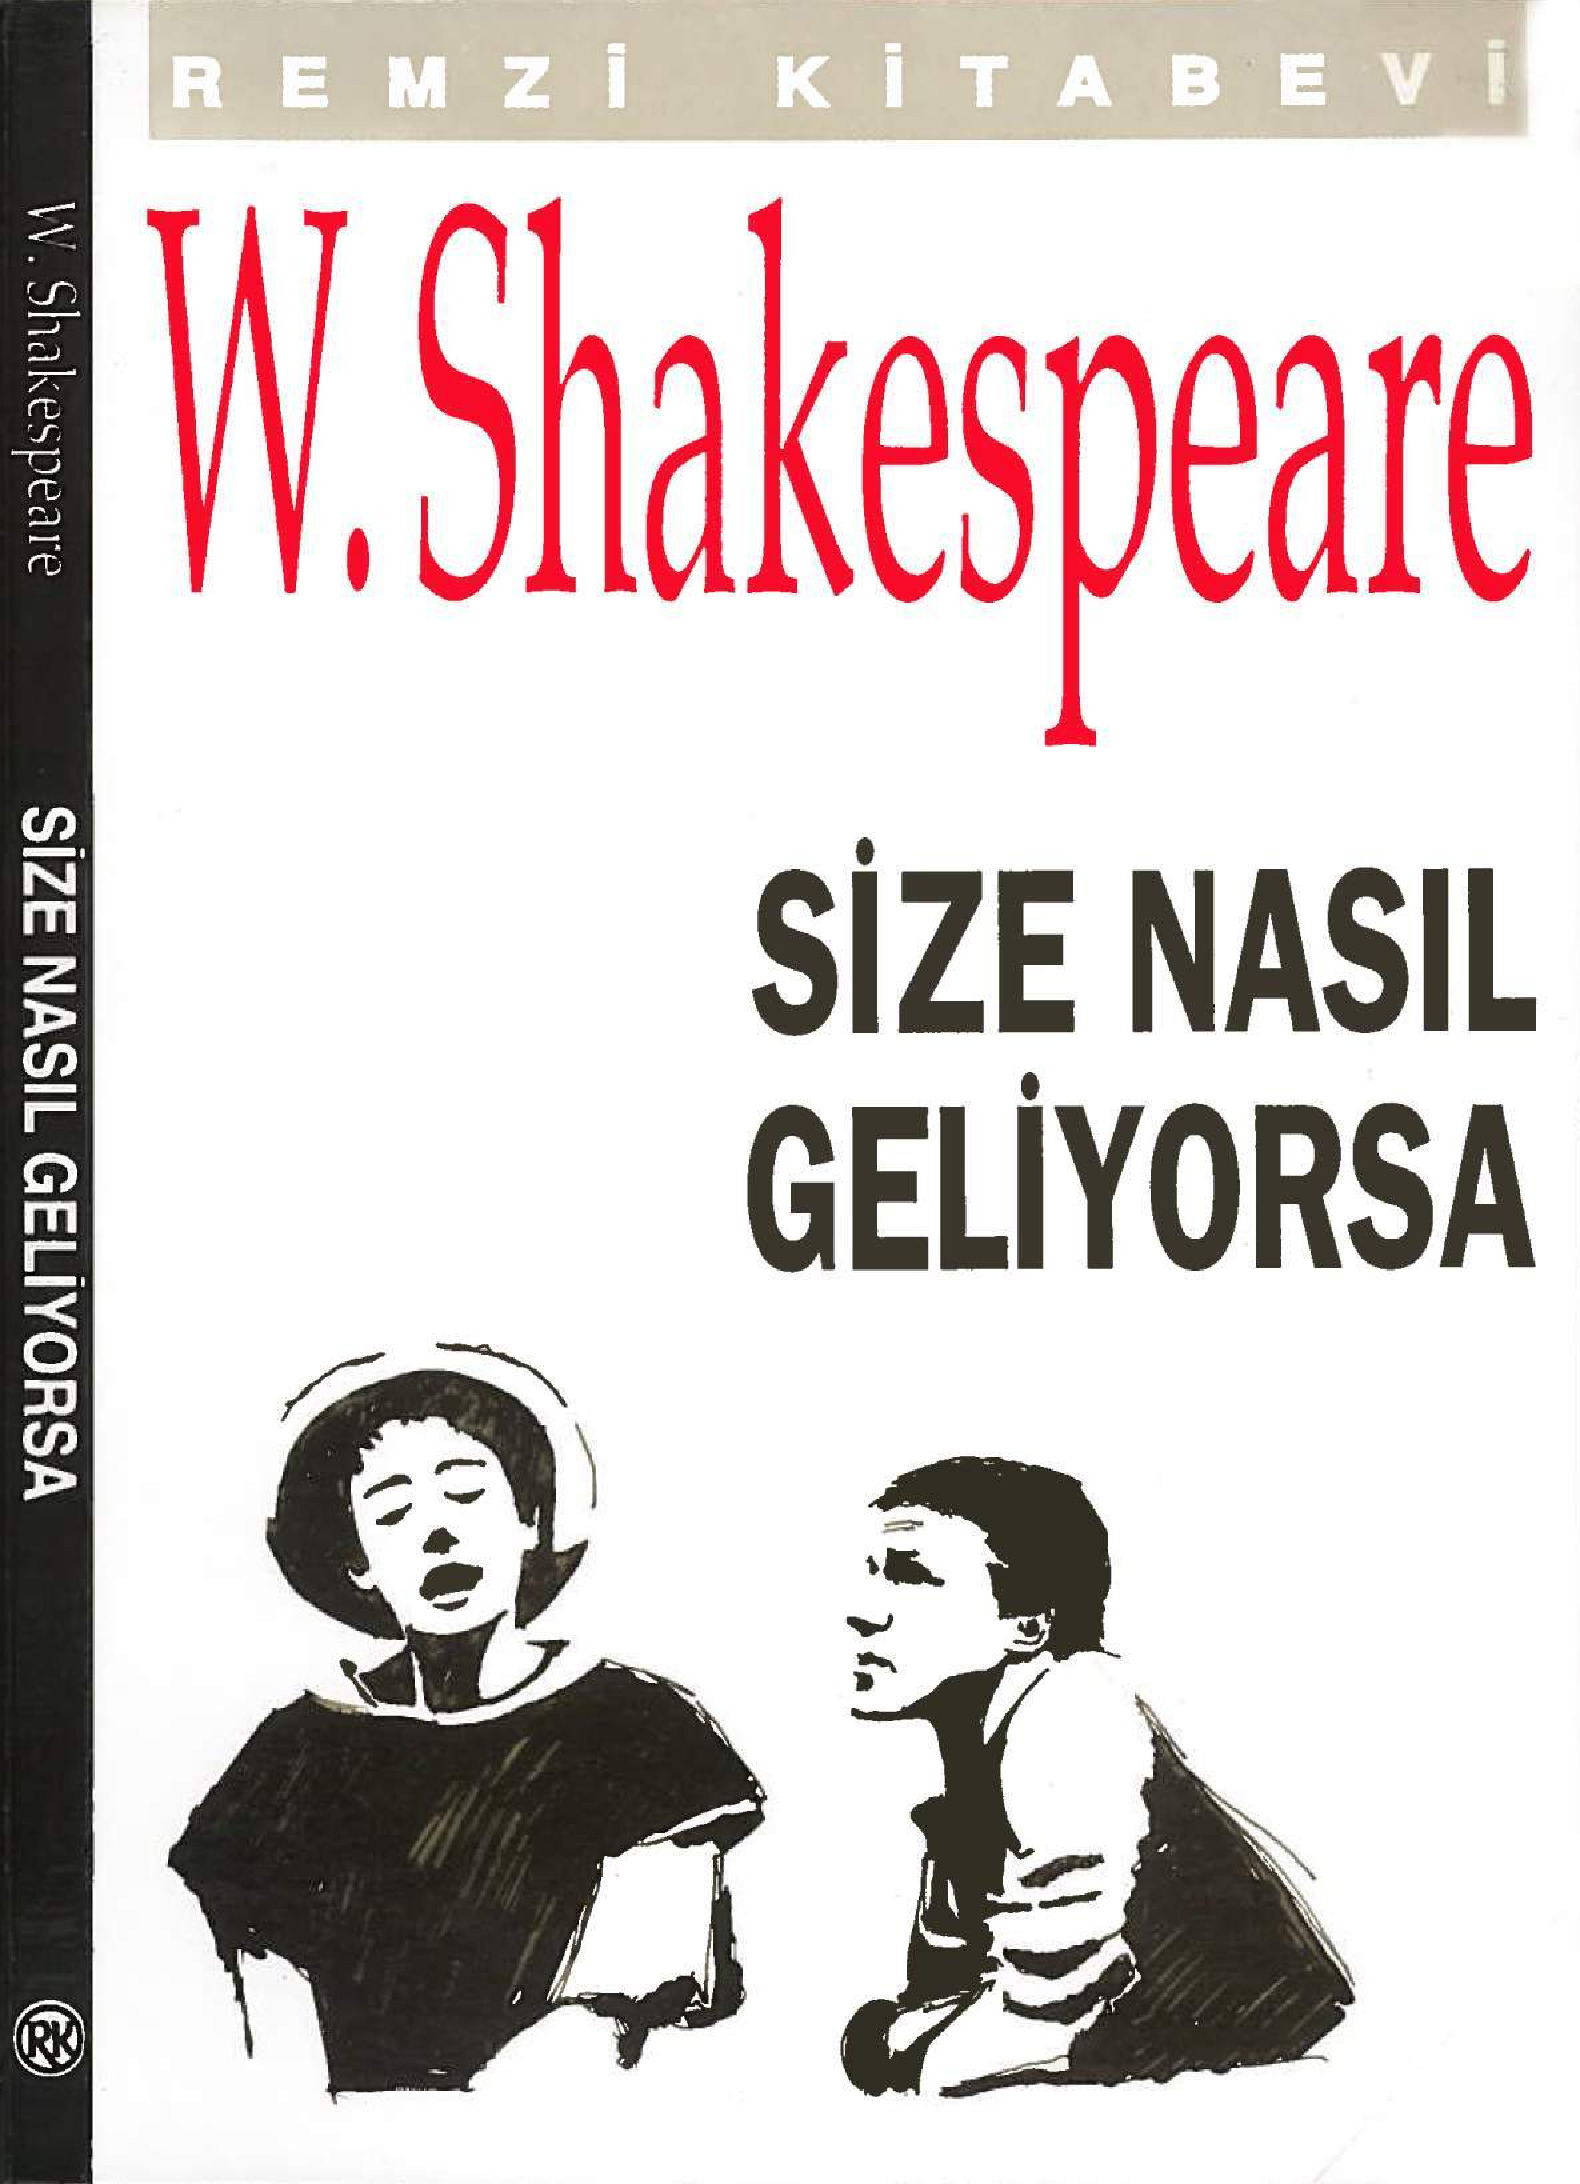 Size Nasıl Geliyorsa-William Shakespeare-Bülend Bozqurd-1992-149s